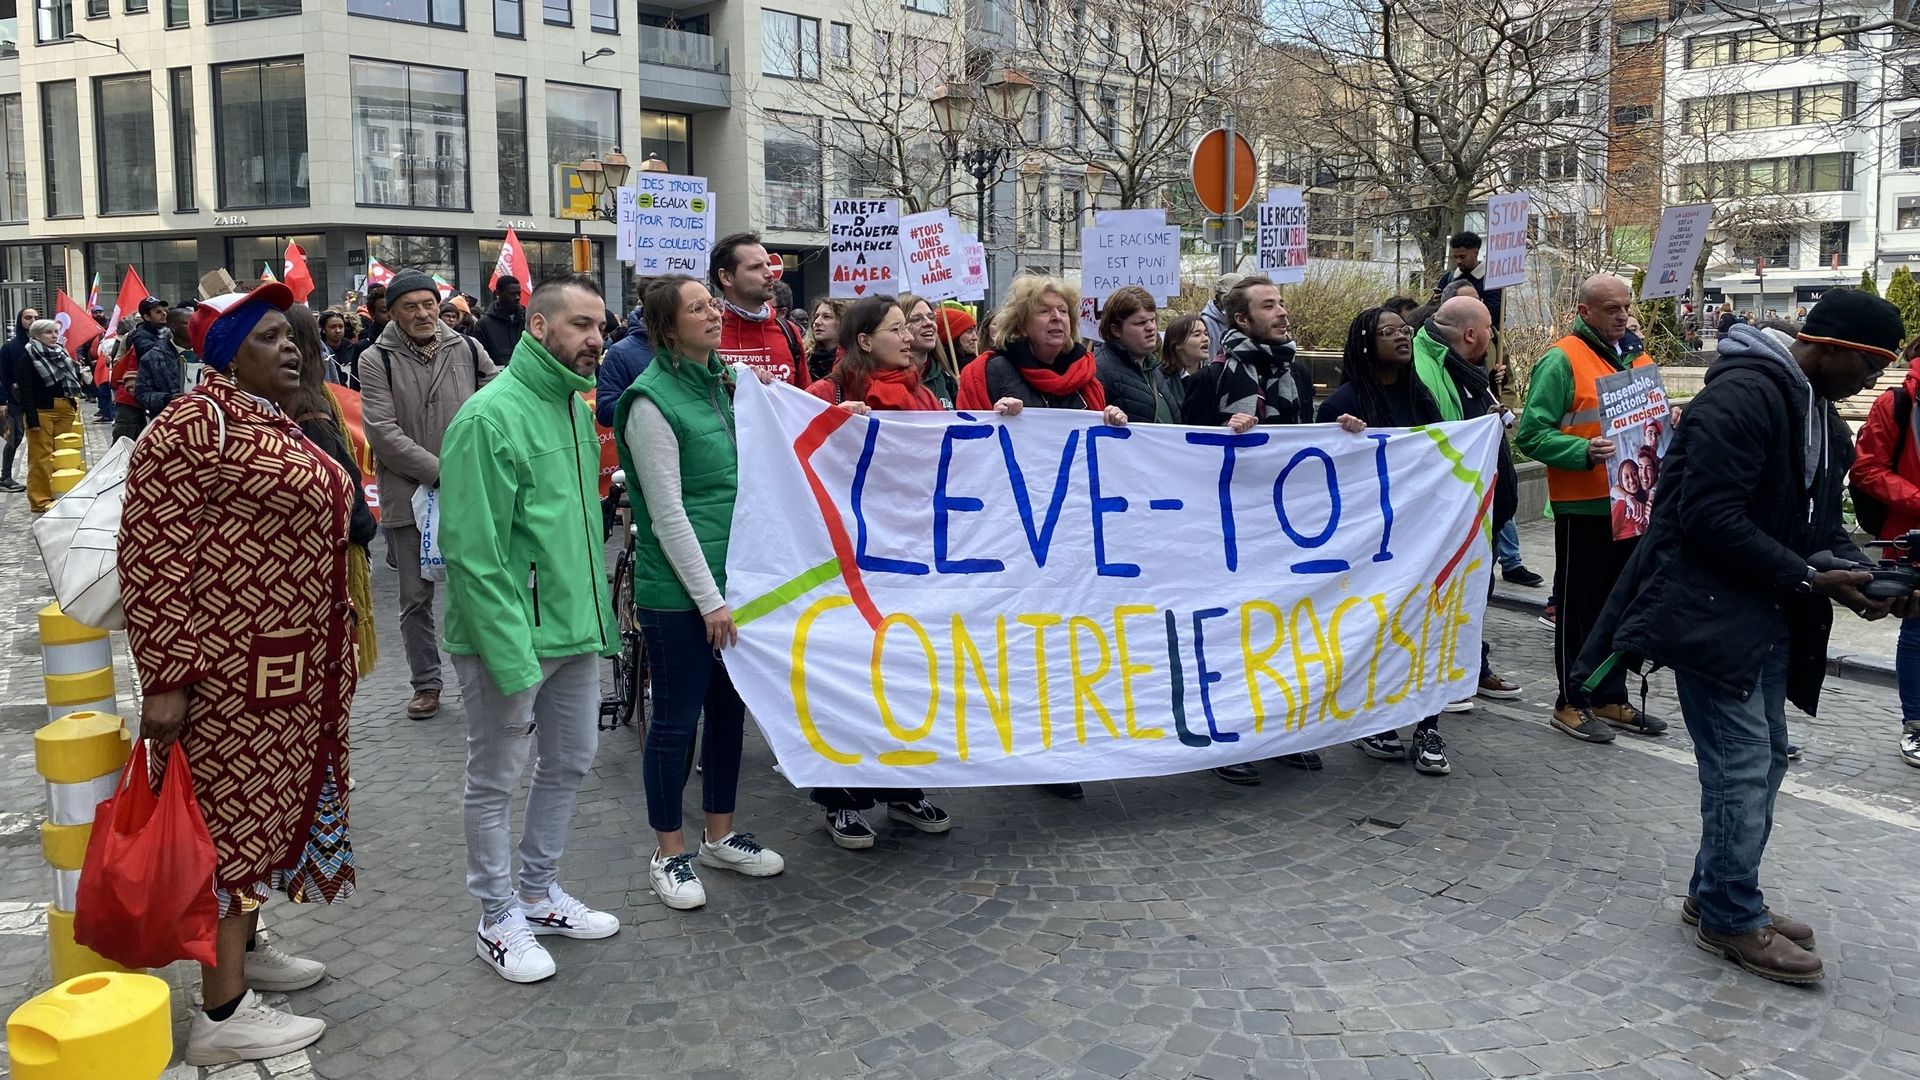 La manifestation contre le racisme a parcouru les rues de Liège ce dimanche en début d’après-midi.